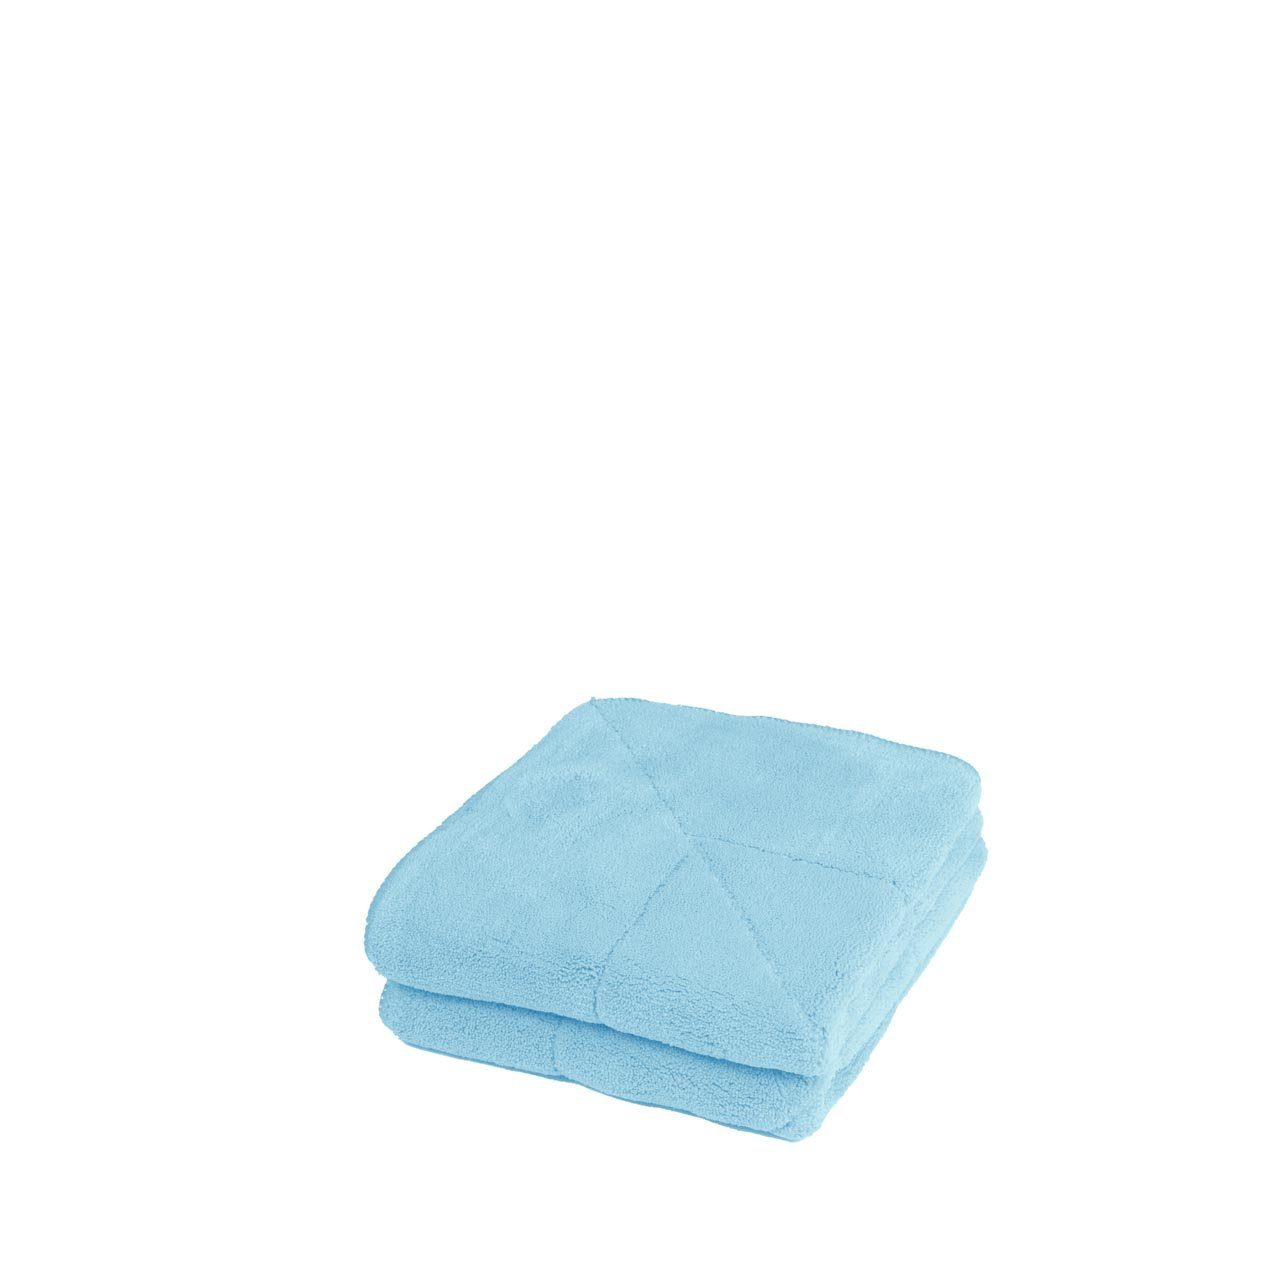 Komm und hab Spaß Unicopuro Soft-Touch 30 blau bei cm 2-tlg., 60° C) Waschbar Mikrofasertuch (Spar-Set, x 30